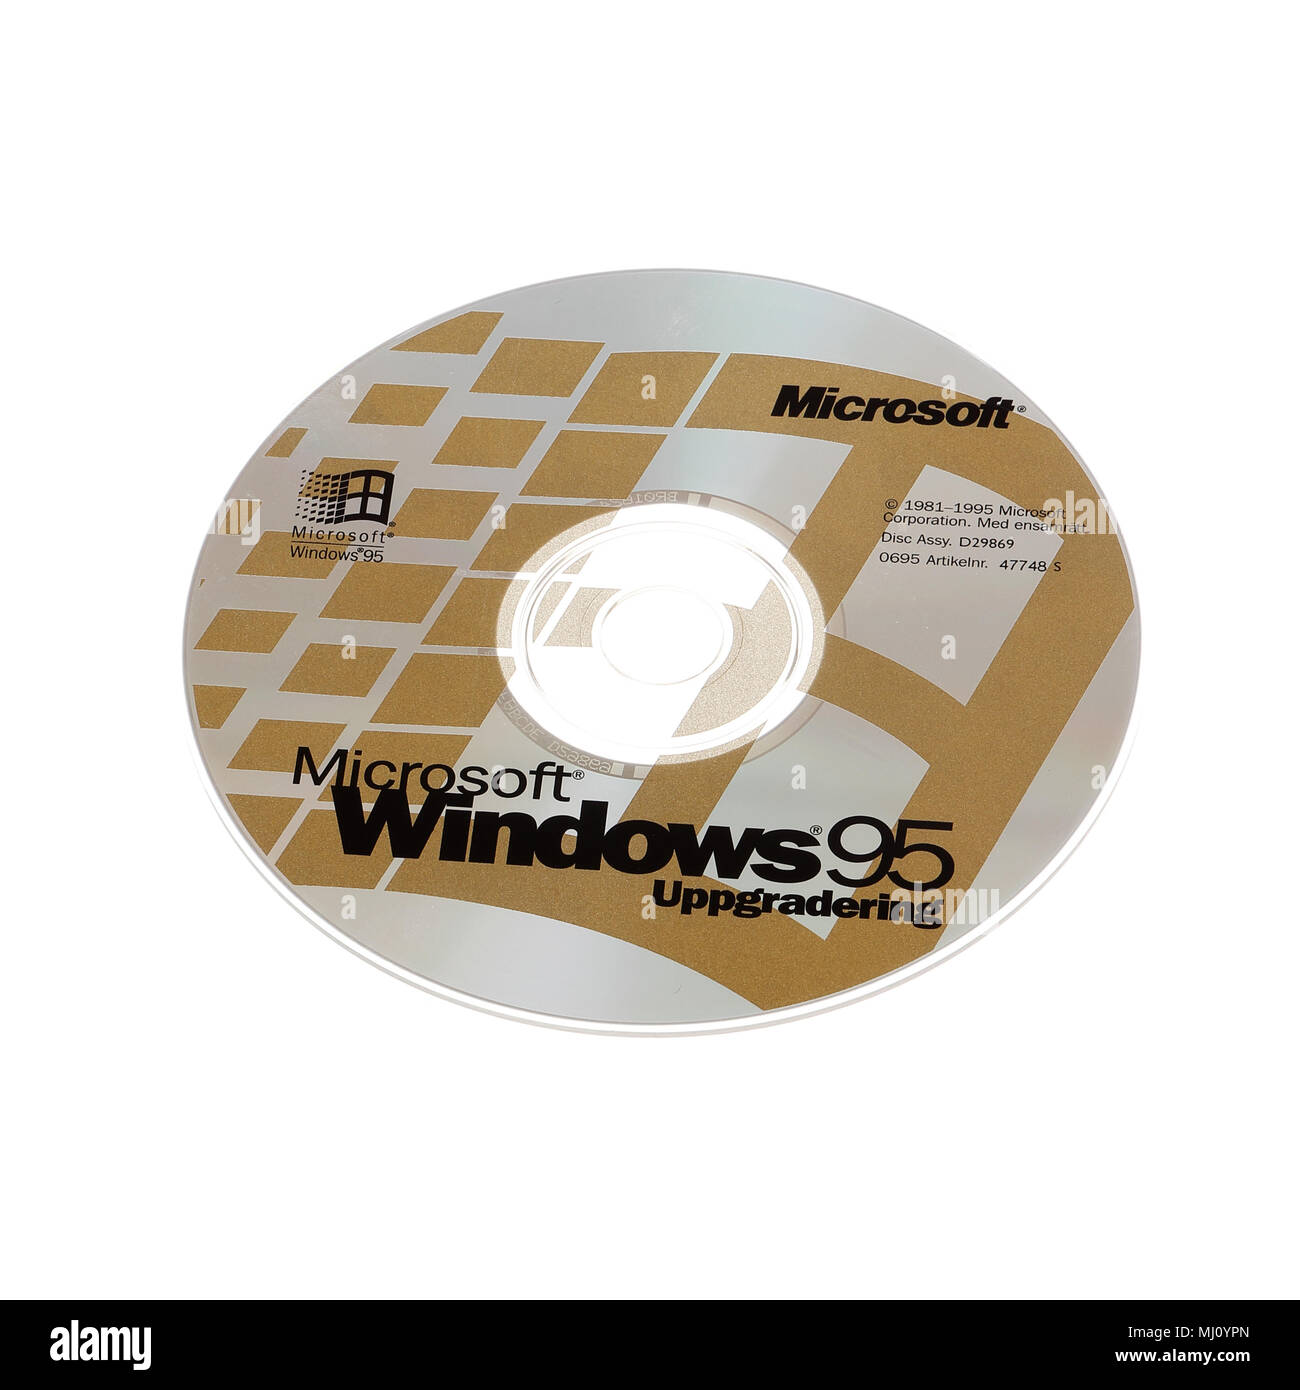 Stoccolma, Svezia - 15 dicembre 2014: un disco CD-ROM con la versione svedese del sistema operativo Microsoft Windows 95 upgrade, isolati su whit Foto Stock